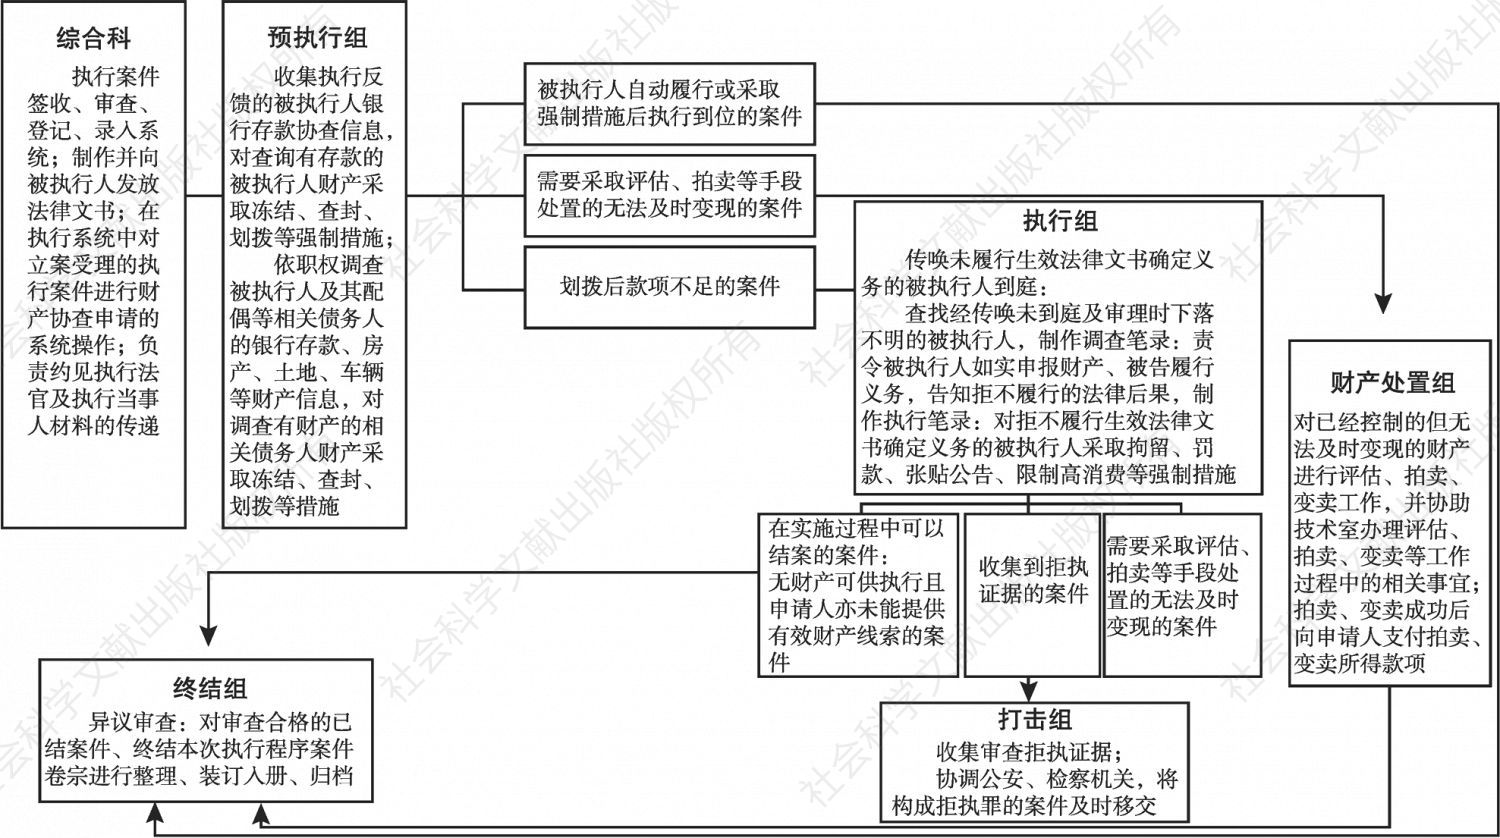 图1 襄城县人民法院执行局分段式执行流程